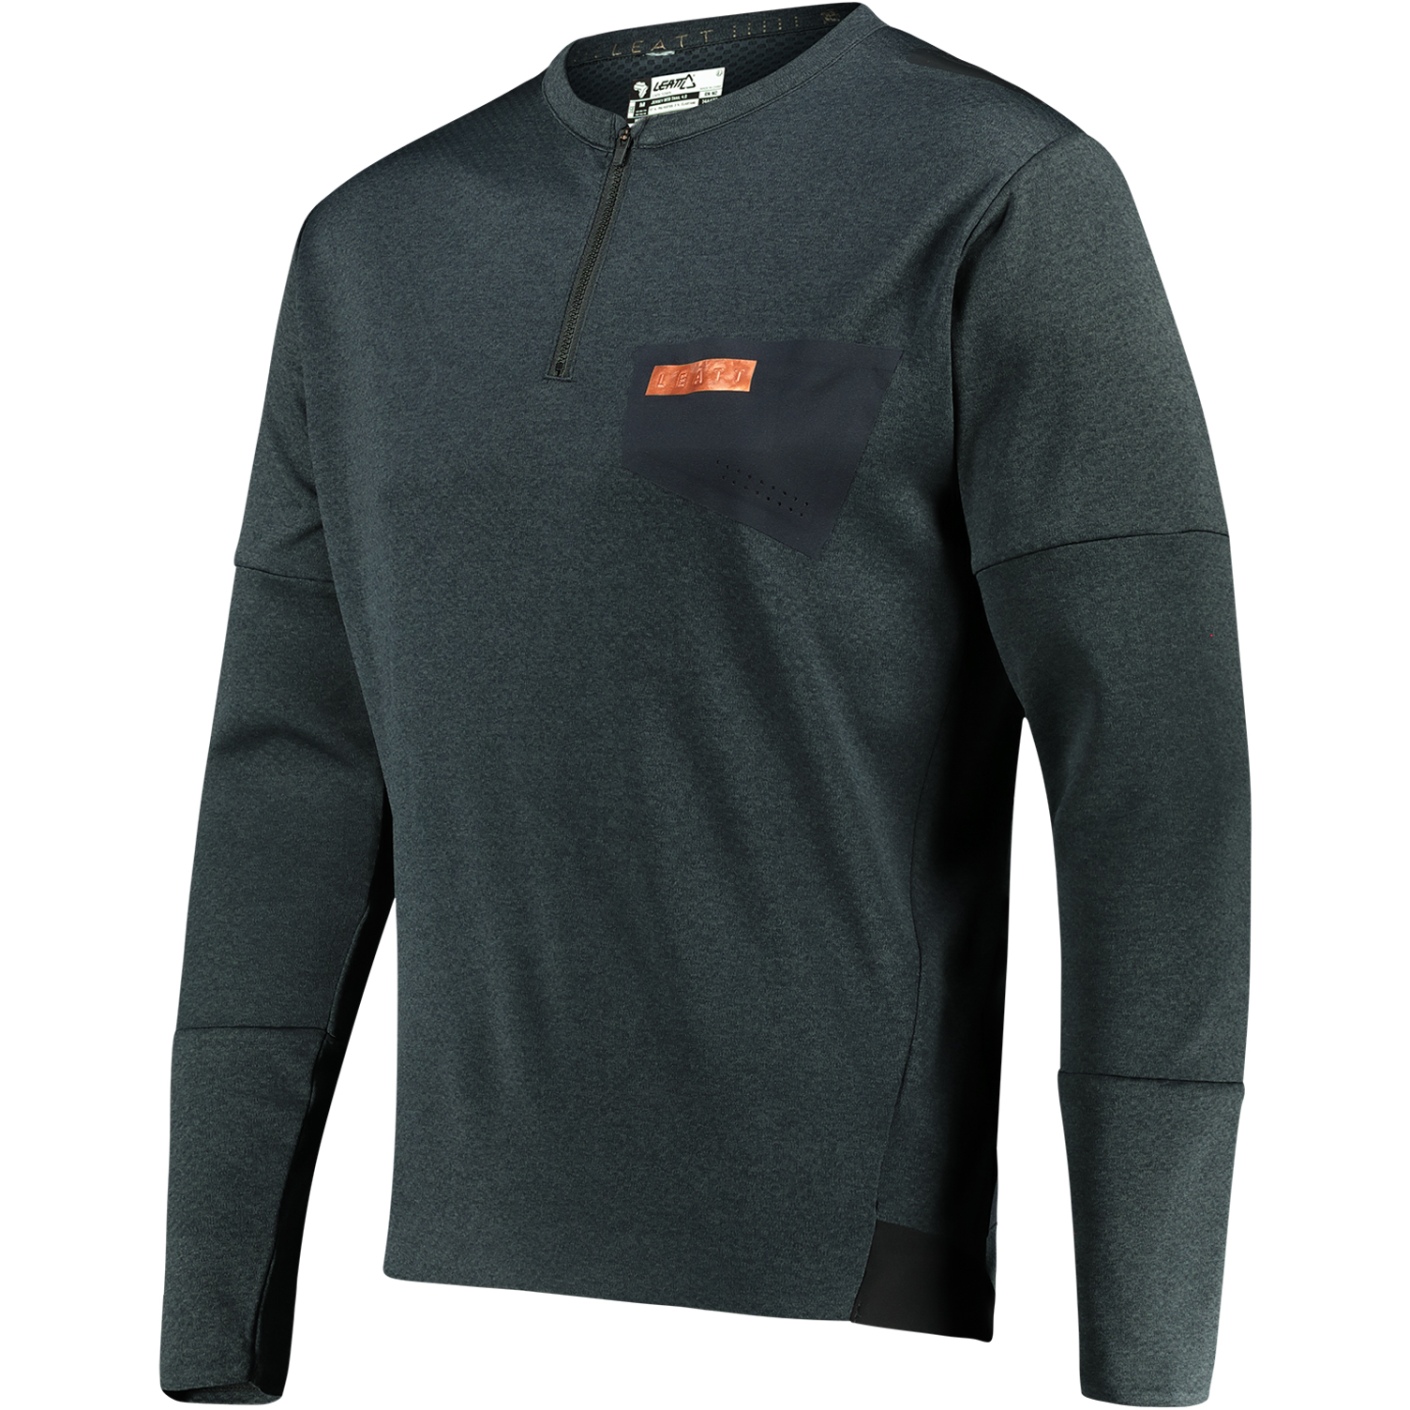 Productfoto van Leatt MTB Trail 4.0 Shirt met Lange Mouwen - zwart